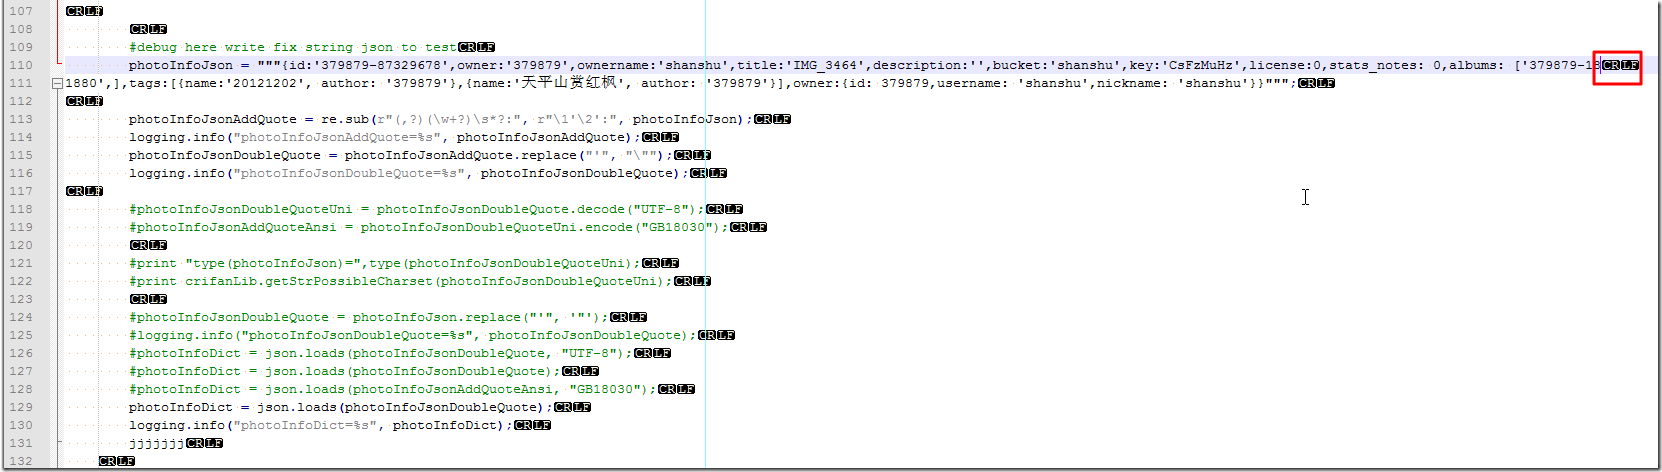 【已解决】Python中用json.loads解码字符串出错：ValueError: No JSON object could be decoded